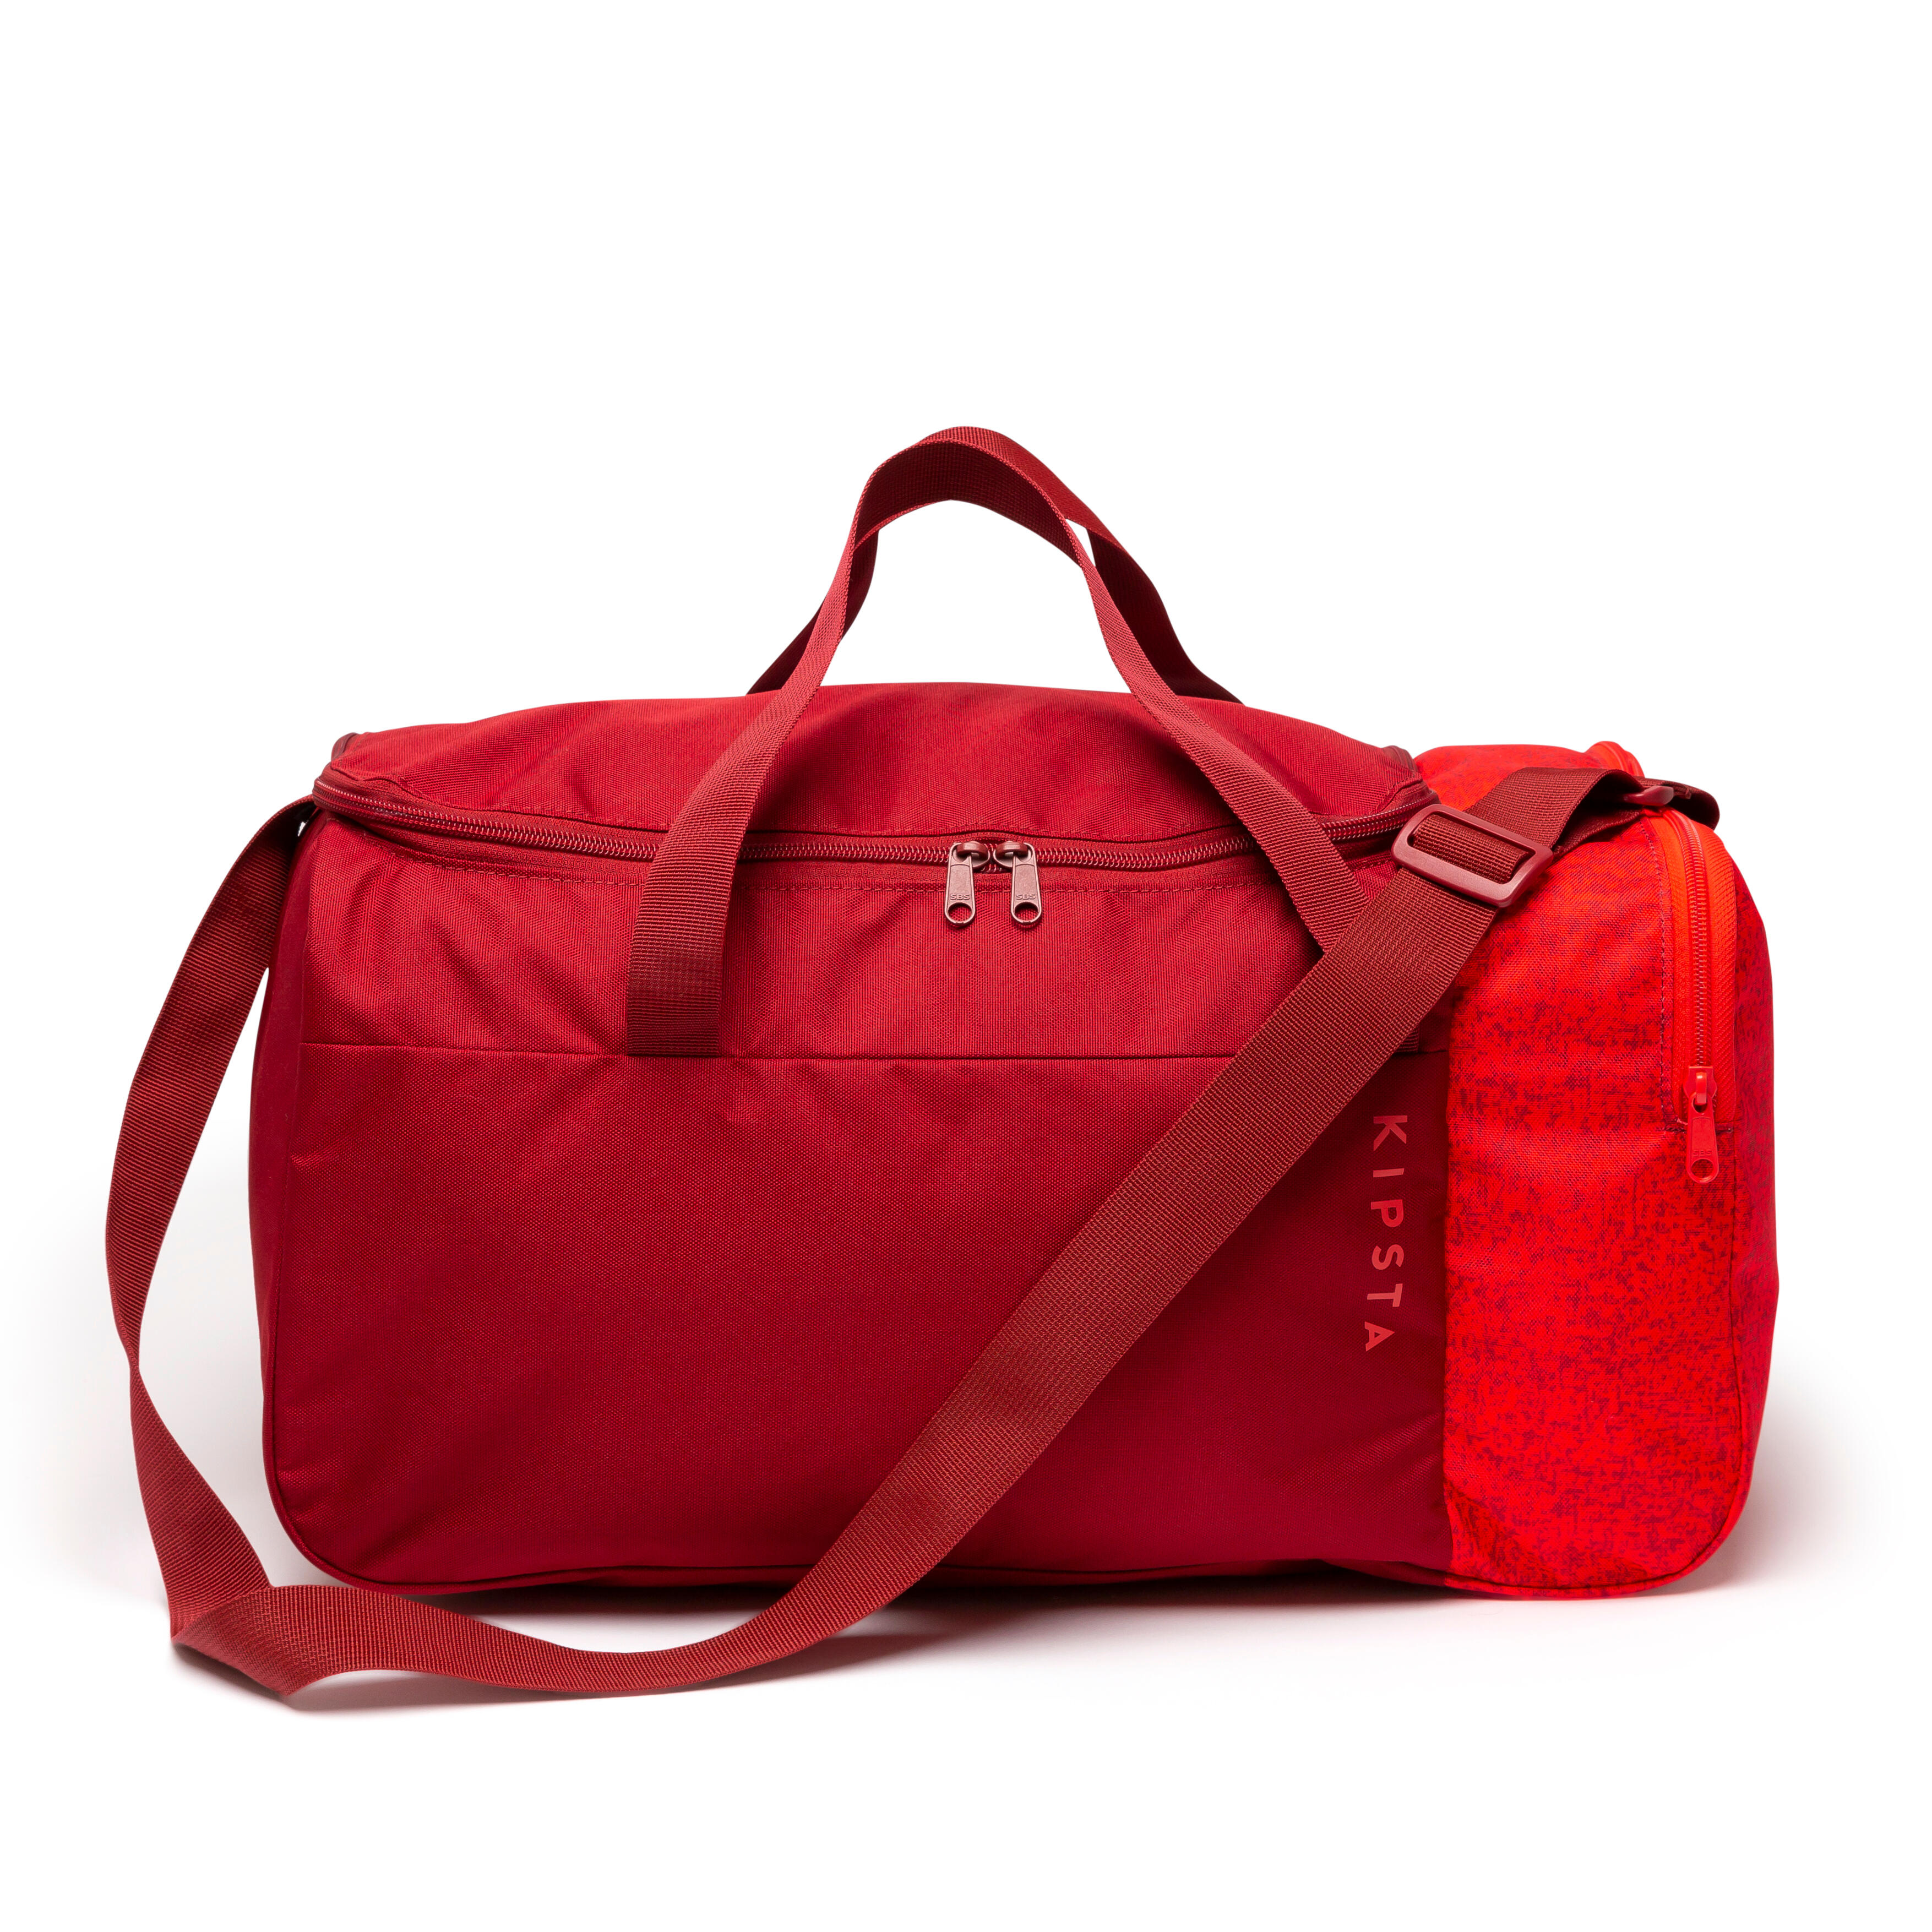 Soccer Bag - Essential 35 L Red - KIPSTA